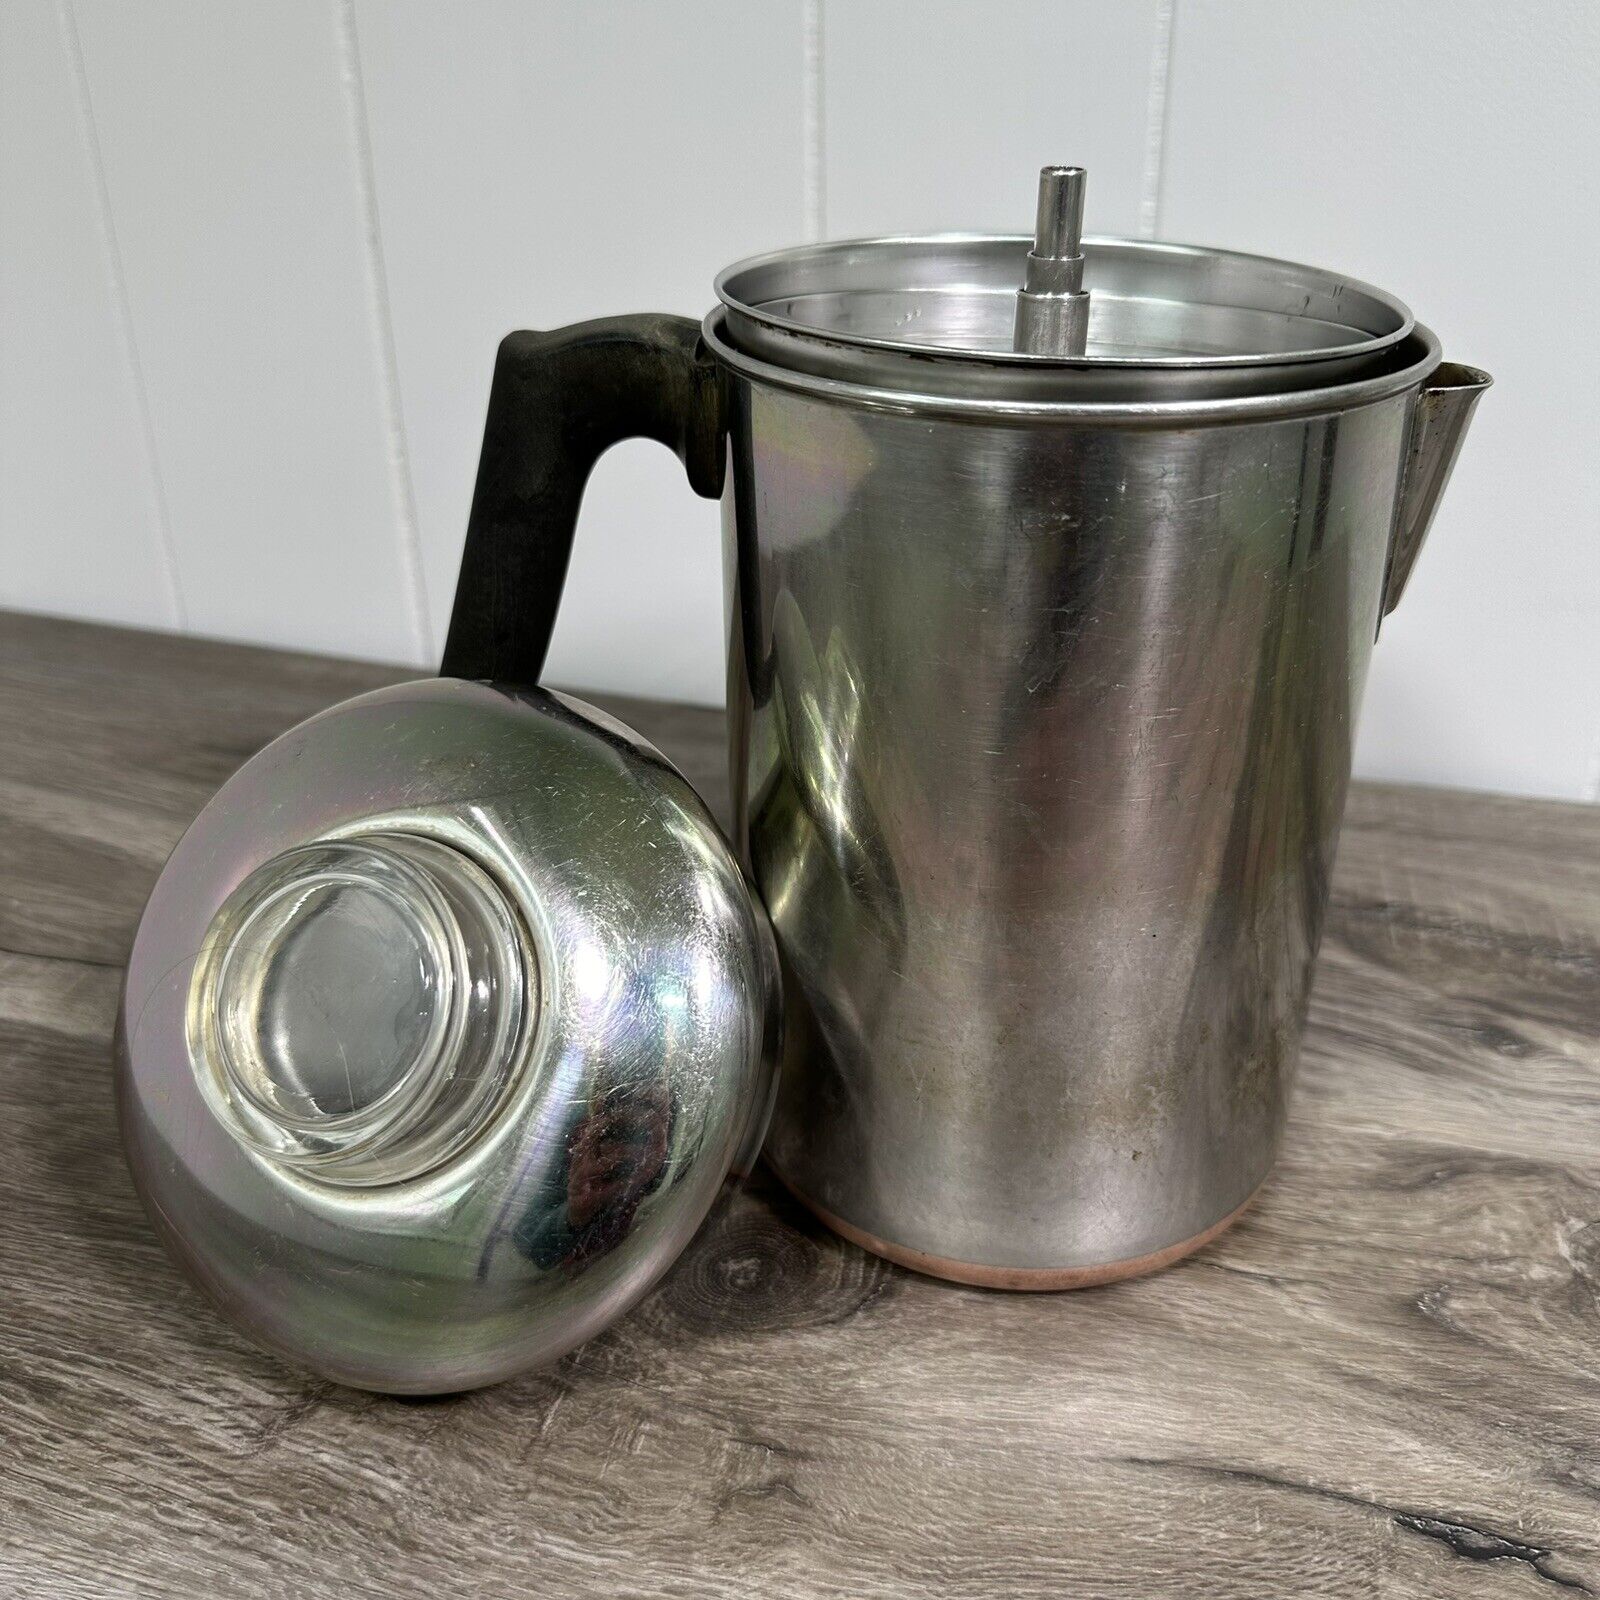 Vintage Revere Ware Percolator 1801 8-Cup Stove Coffee Pot Copper Glass Camping 